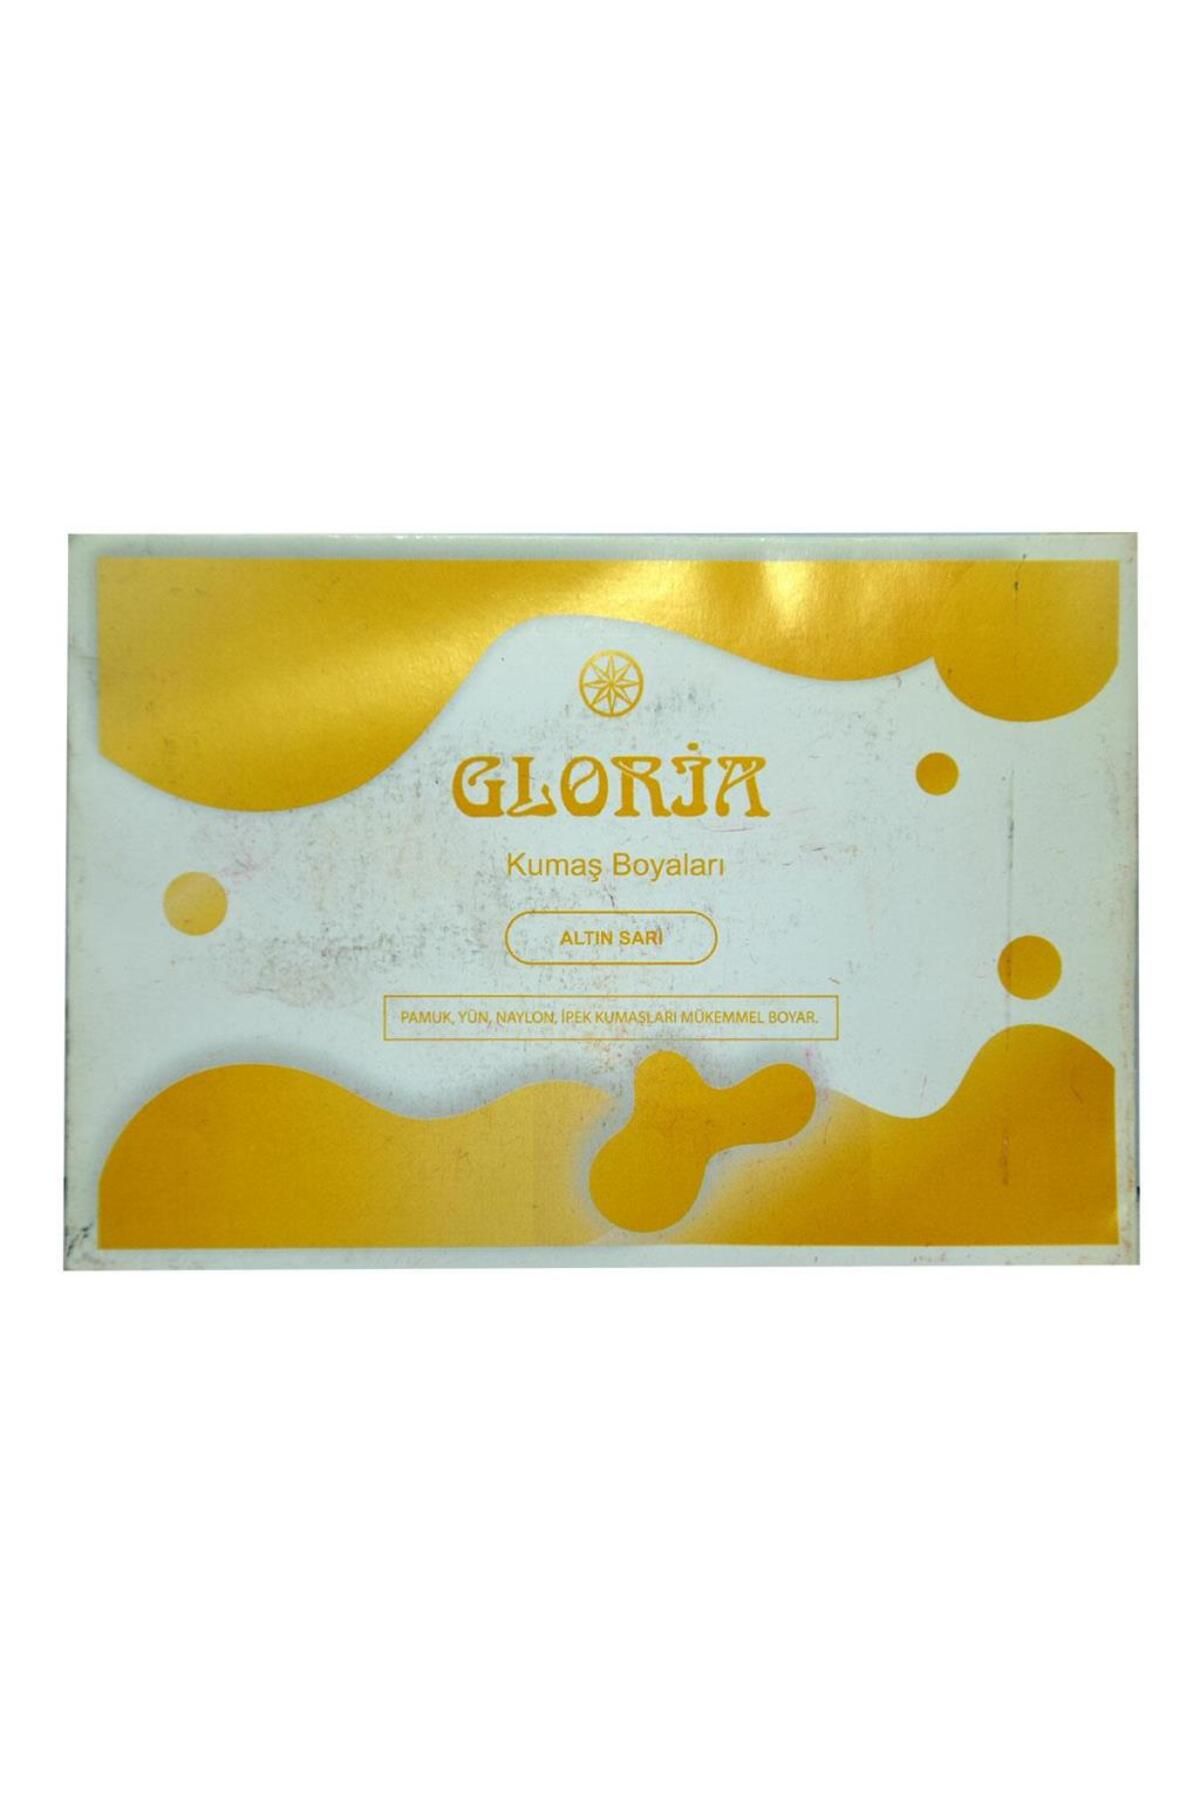 Gloria Kumaş Boyası Altın Sarı 10 gr Pamuk Yün Naylon I?pek I?çin